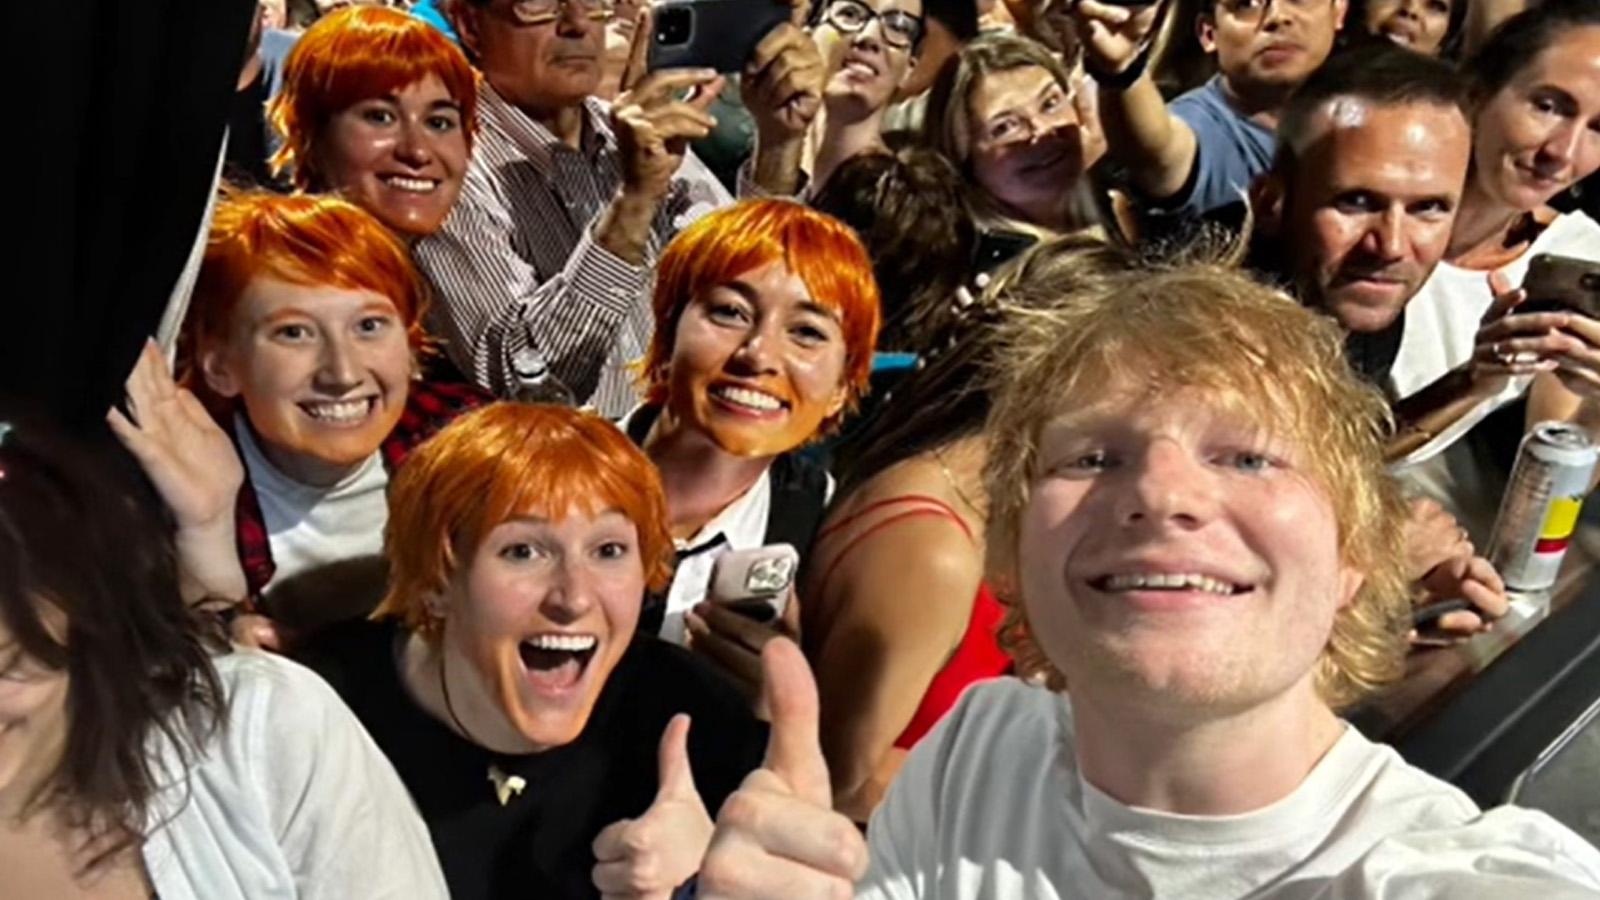 Ed Sheeran fans heartbroken after last-minute concert cancelation over safety concerns